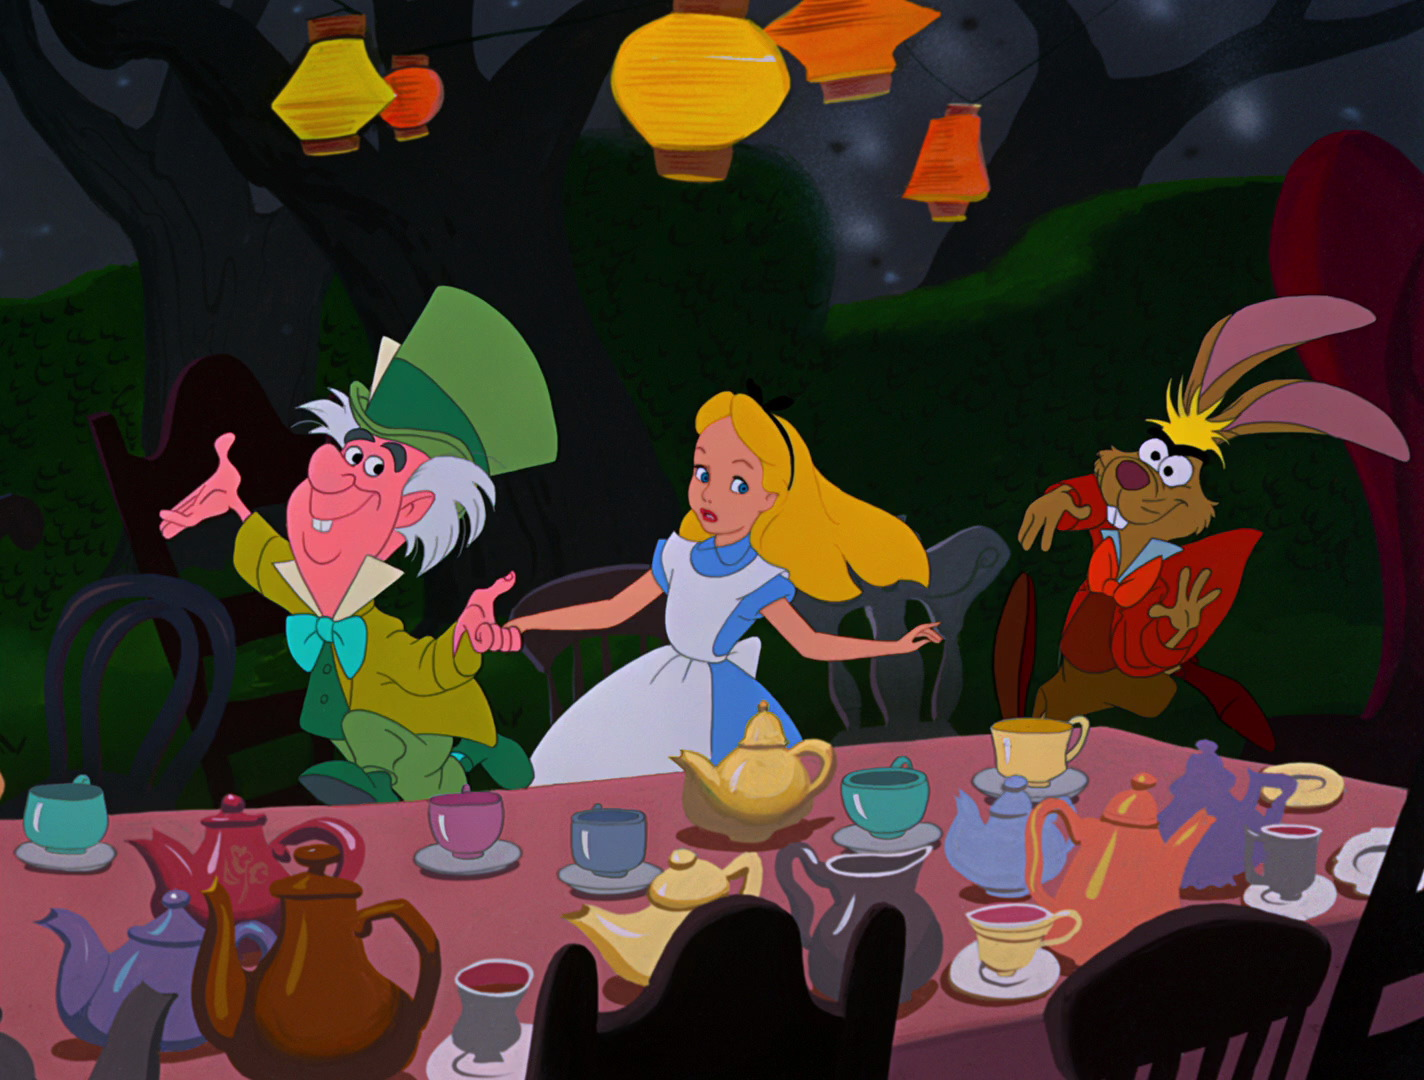 Disney's Alice in Wonderland